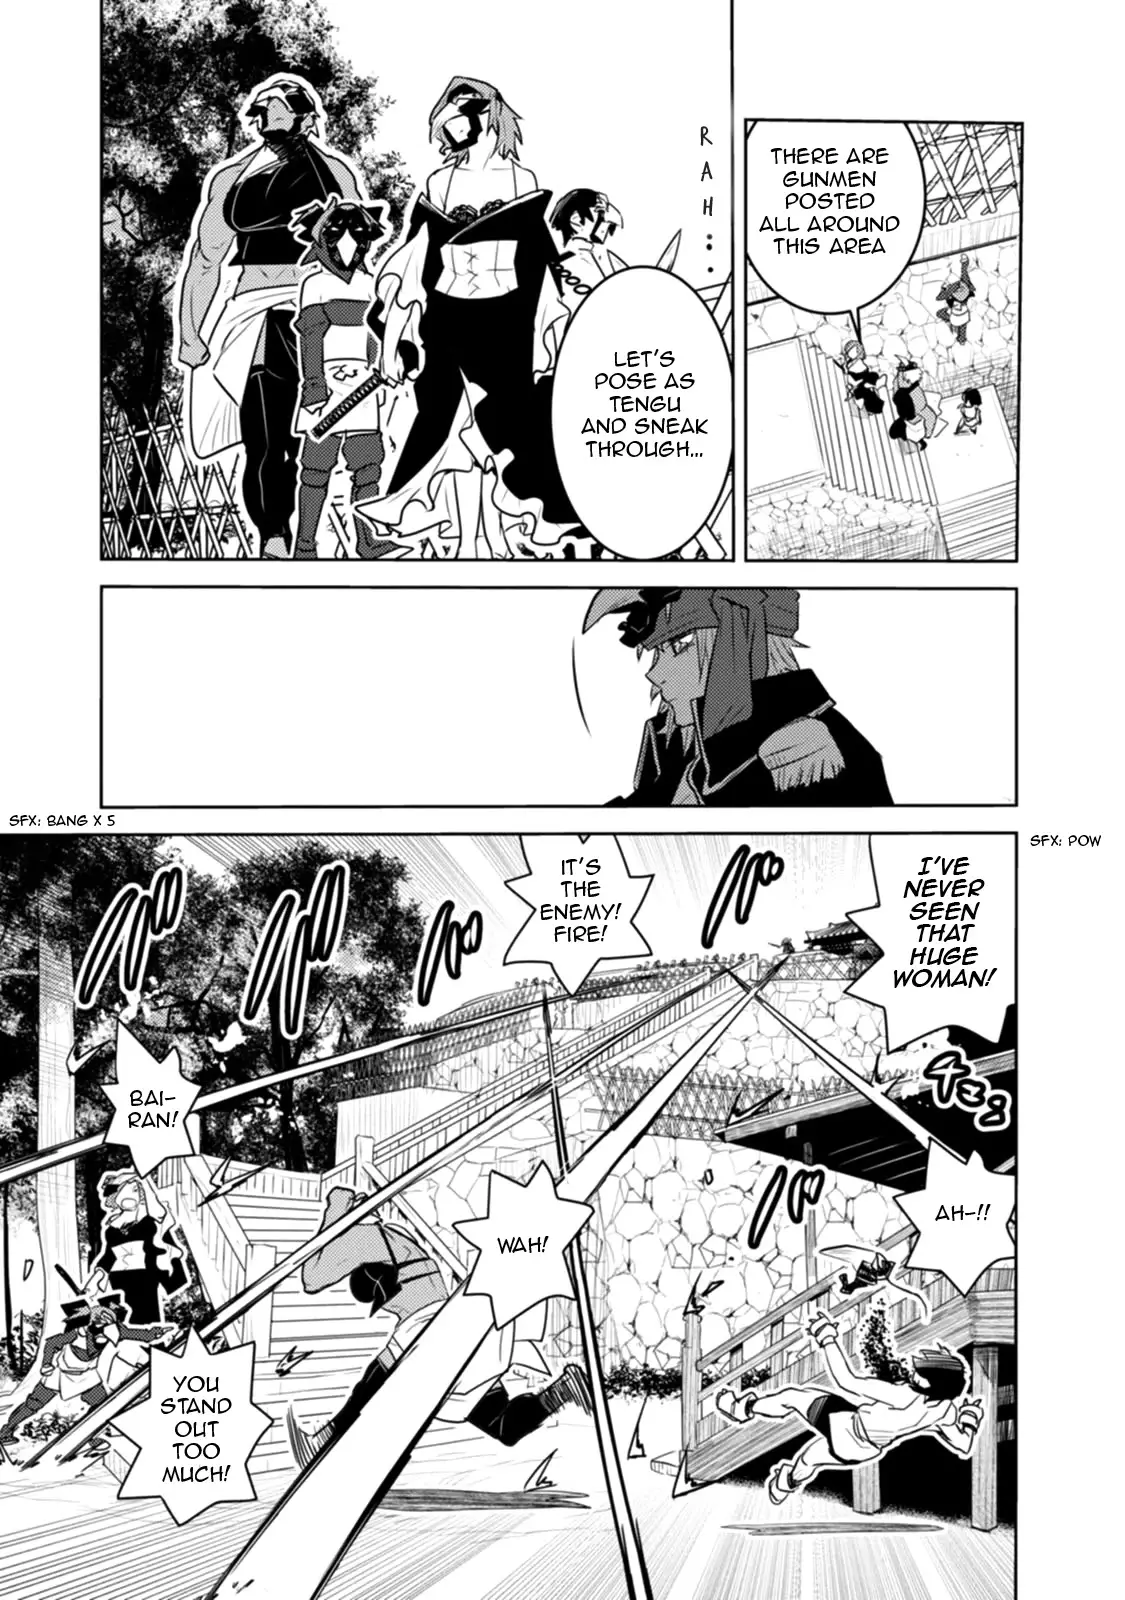 Tokugawa No Saru - 20 page 8-9131a488